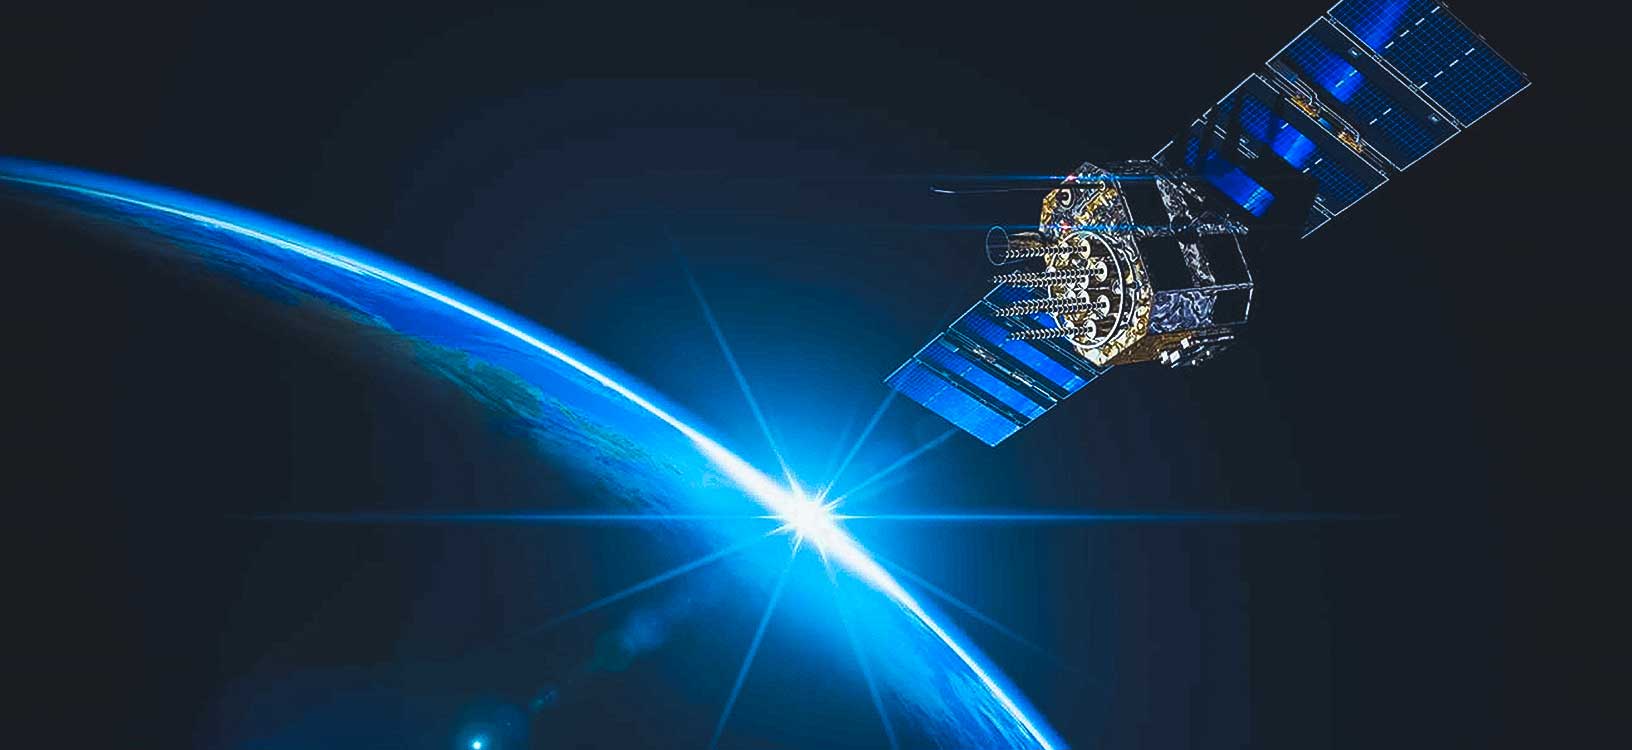 GNSS 衛星の地上環境